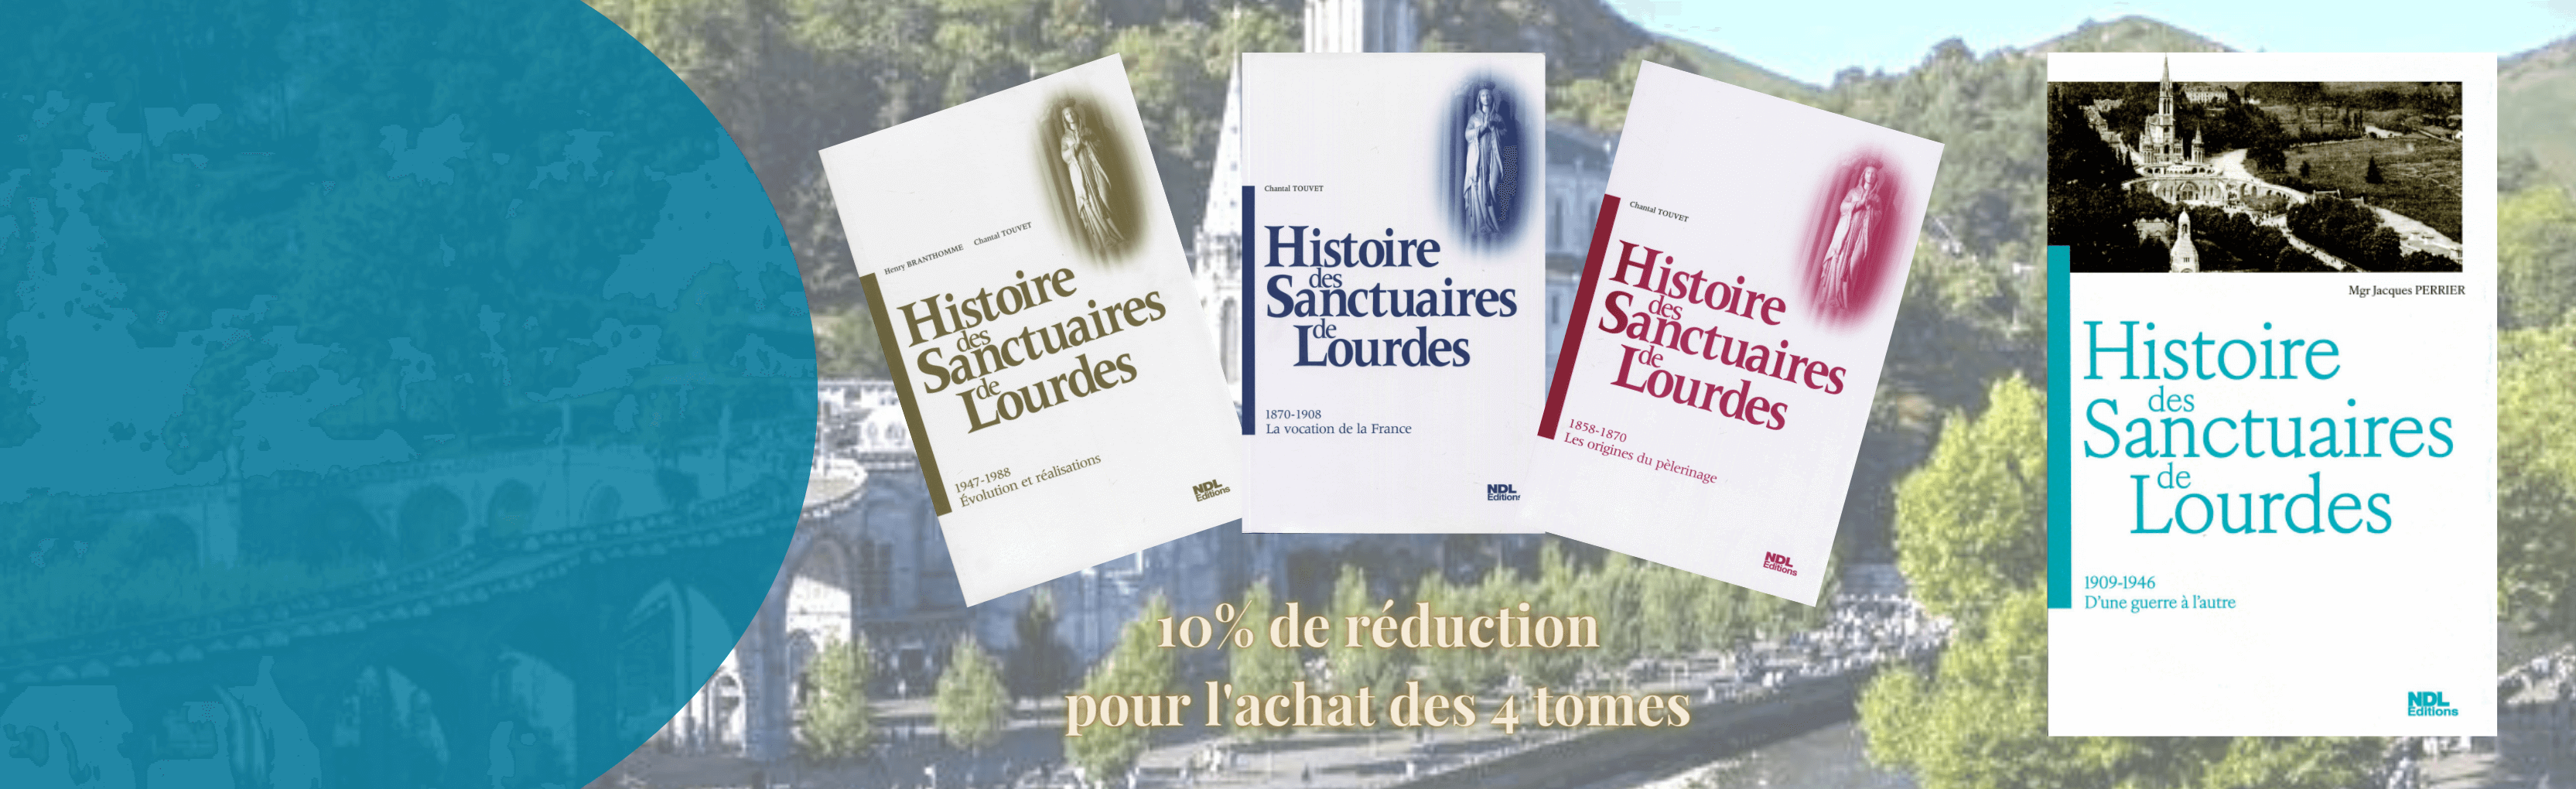 Bannière annonçant la parution du quatrième tome de la collection, Histoire des Sanctuaires de Lourdes